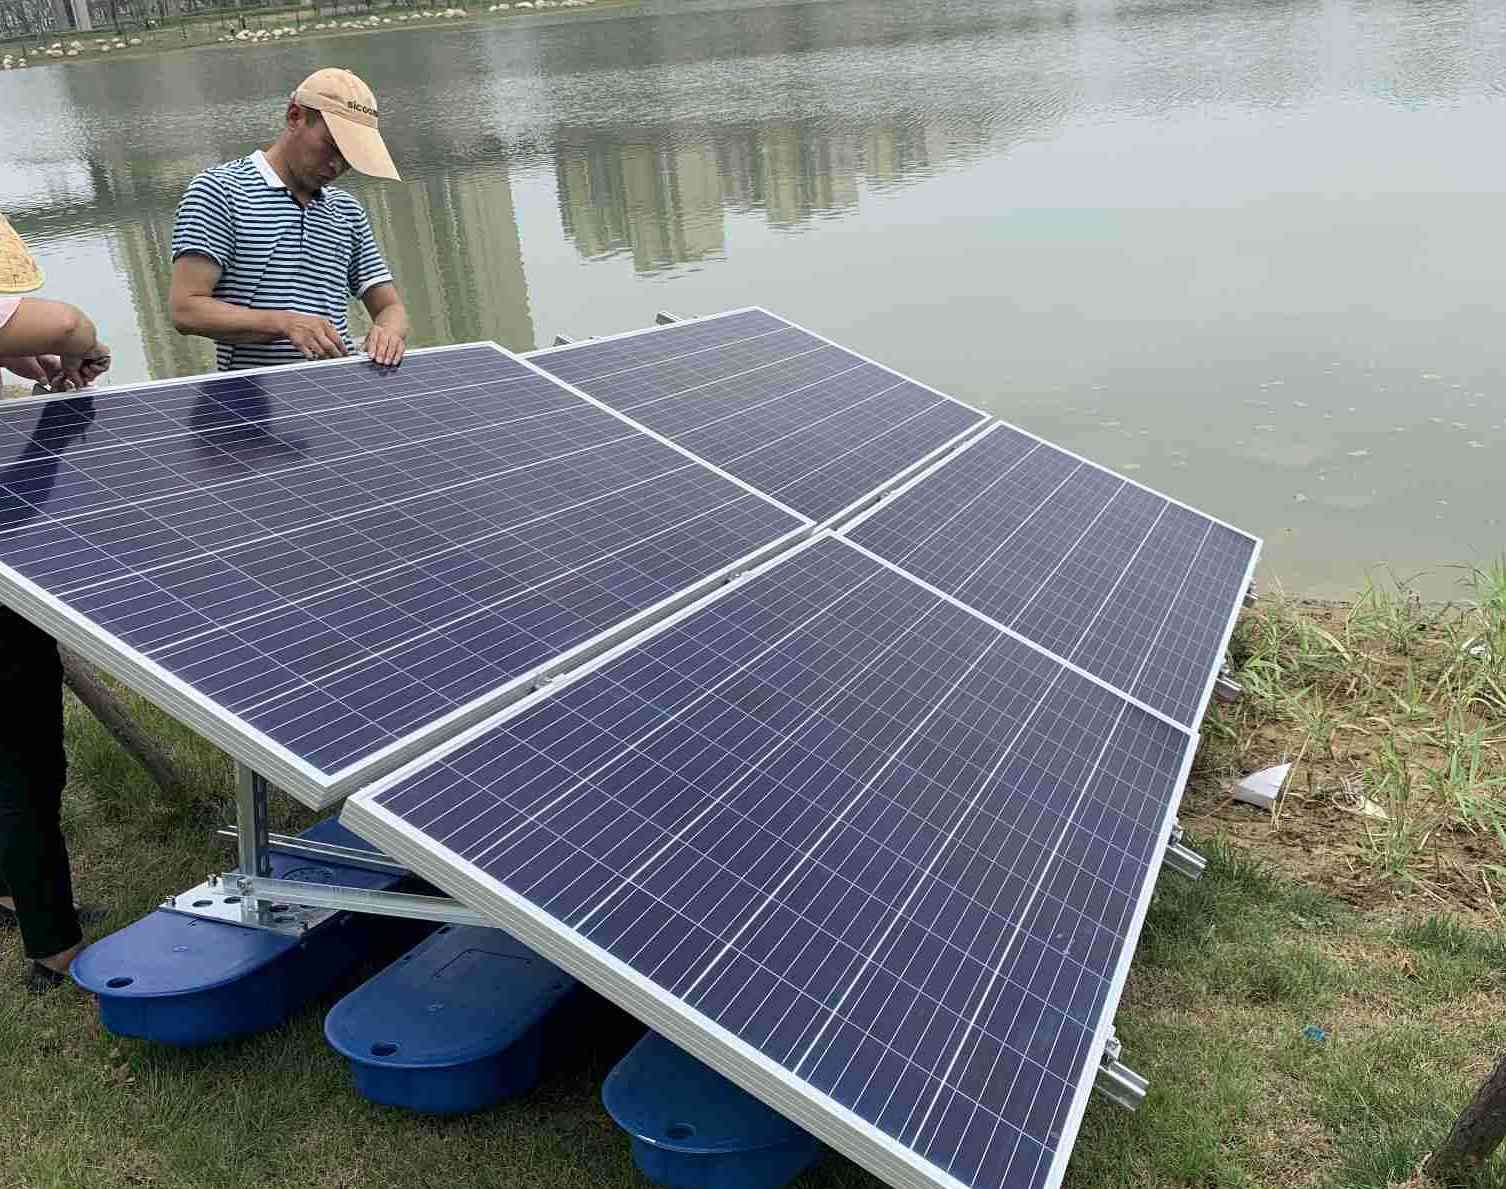  JNTECH système d'aération solaire appliqué avec succès au projet de gouvernance environnementale à Shenling Tan, Anqing ville